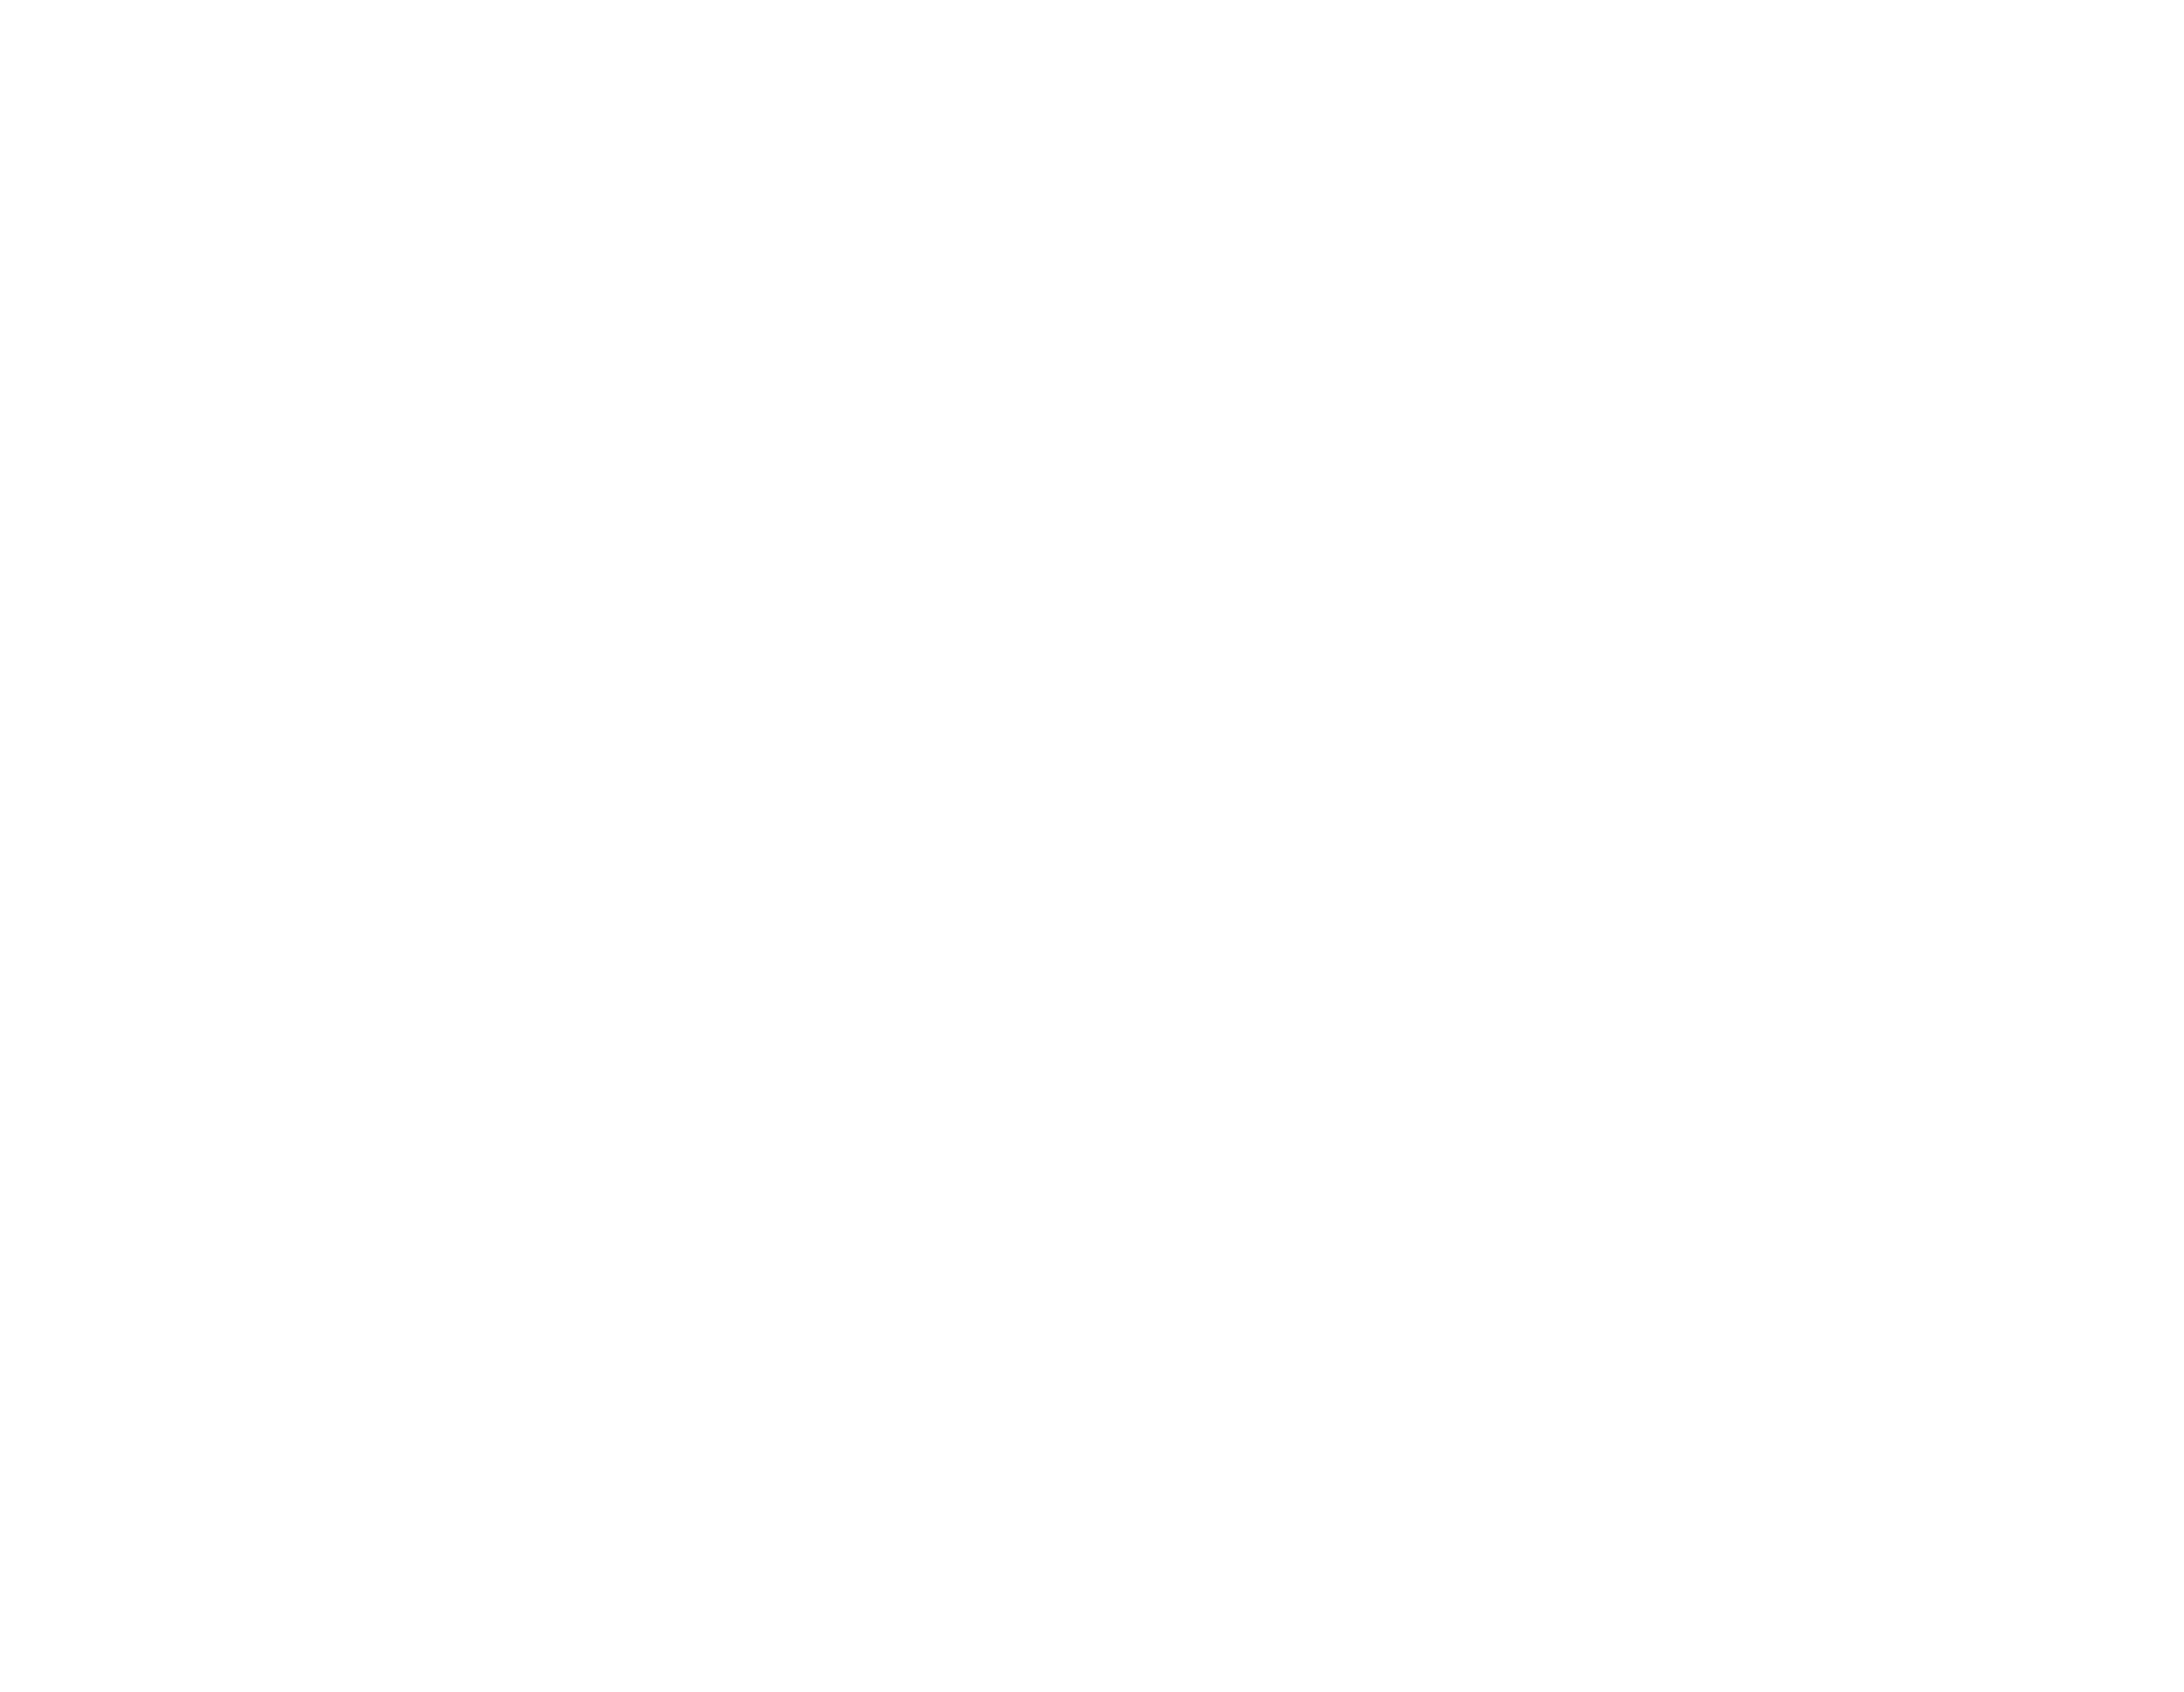 Canton of Geneve website